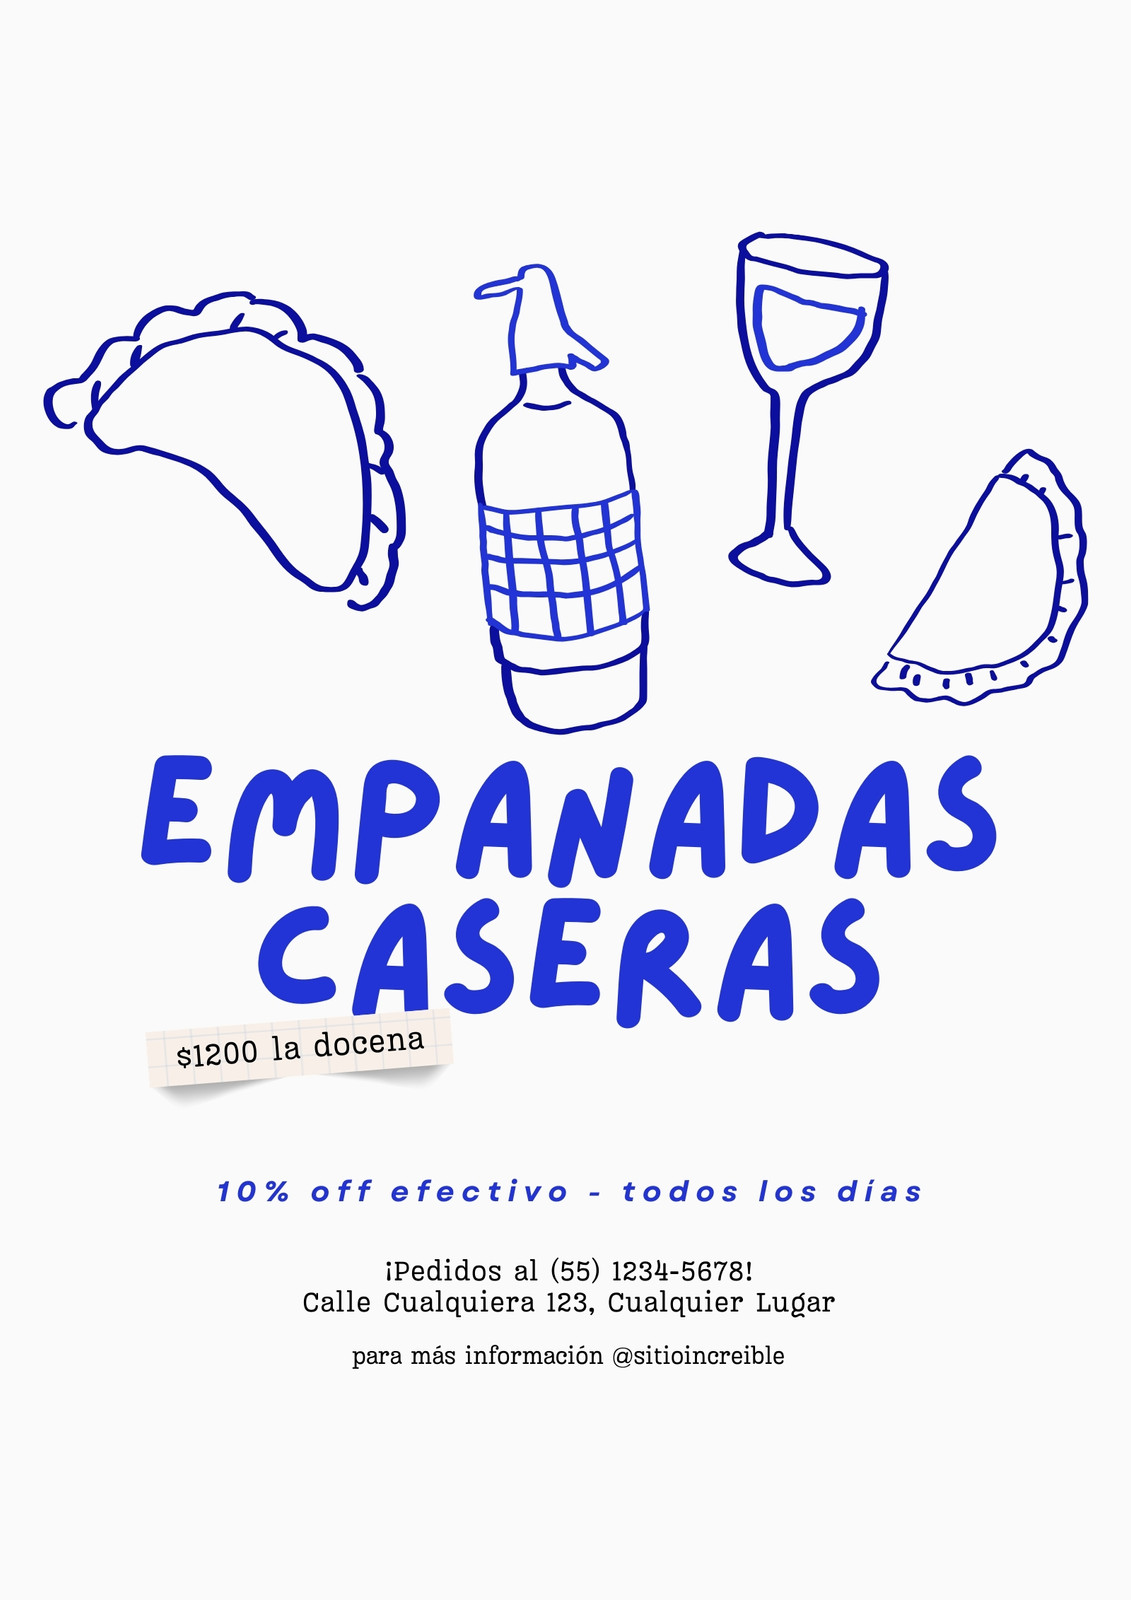 Flyer promoción empanadas caseras Argentina ilustrado celeste y blanco